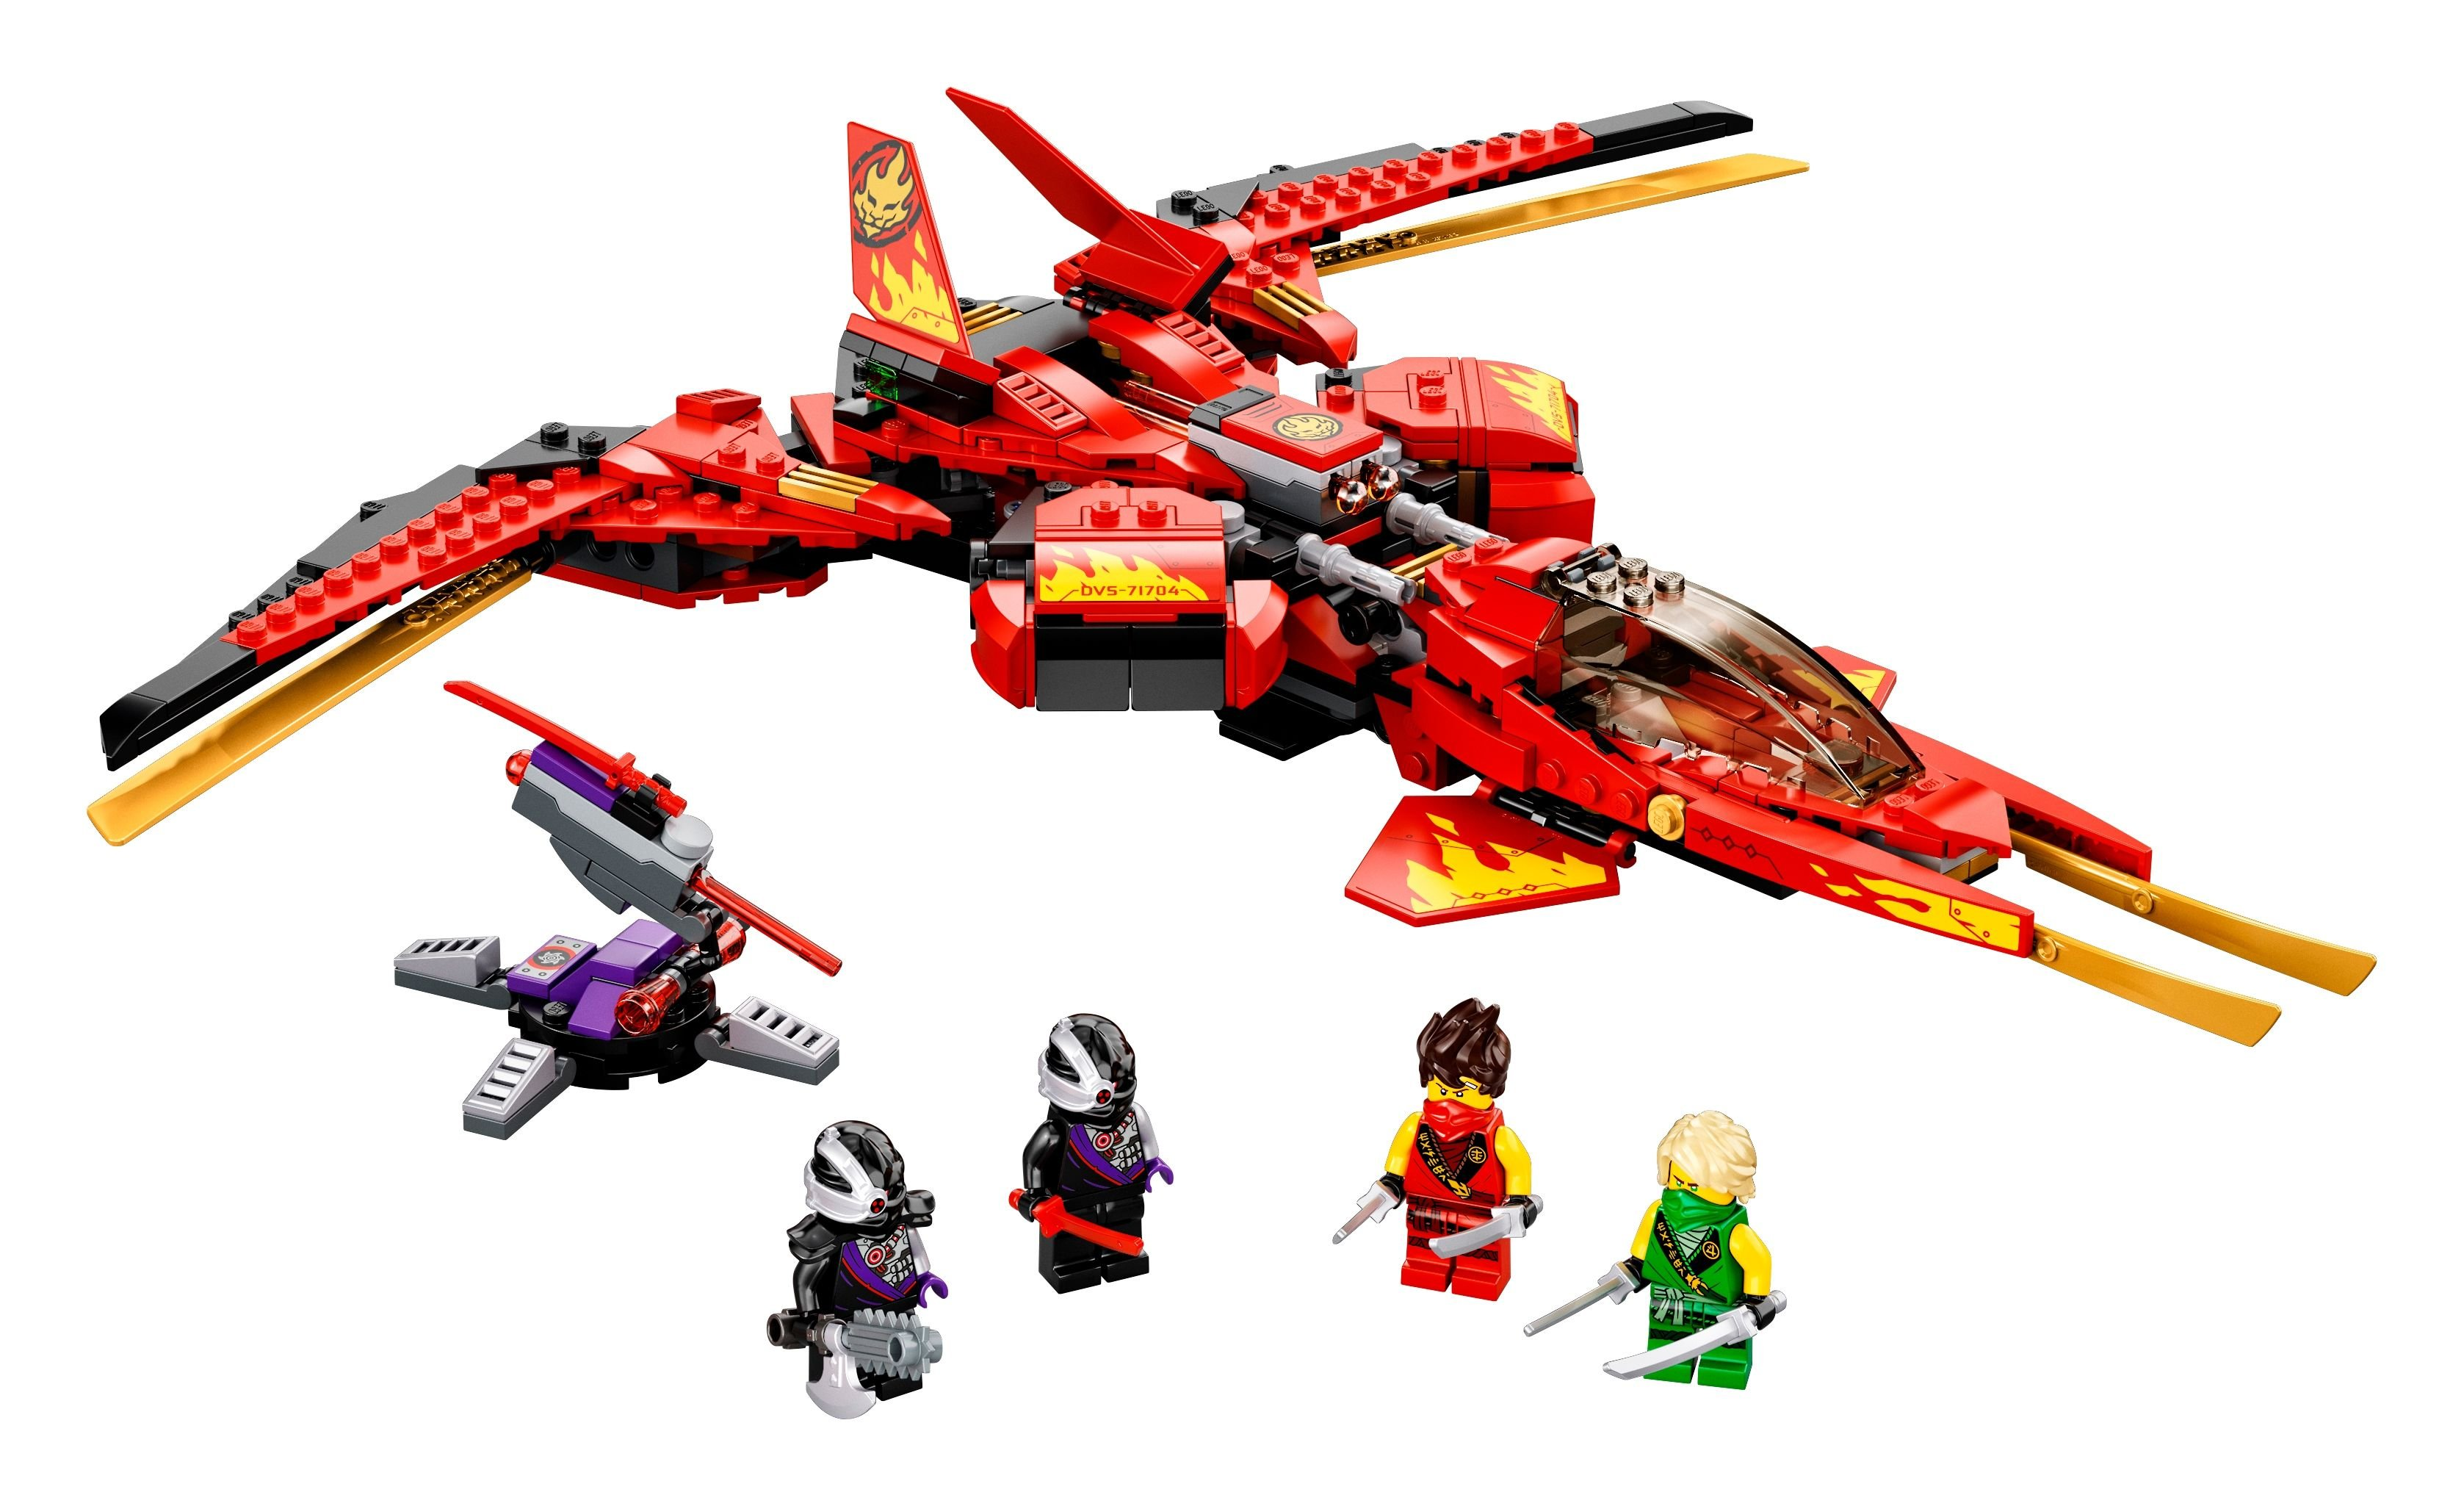 Super-Jet LEGO 71704 Bausatz Kais